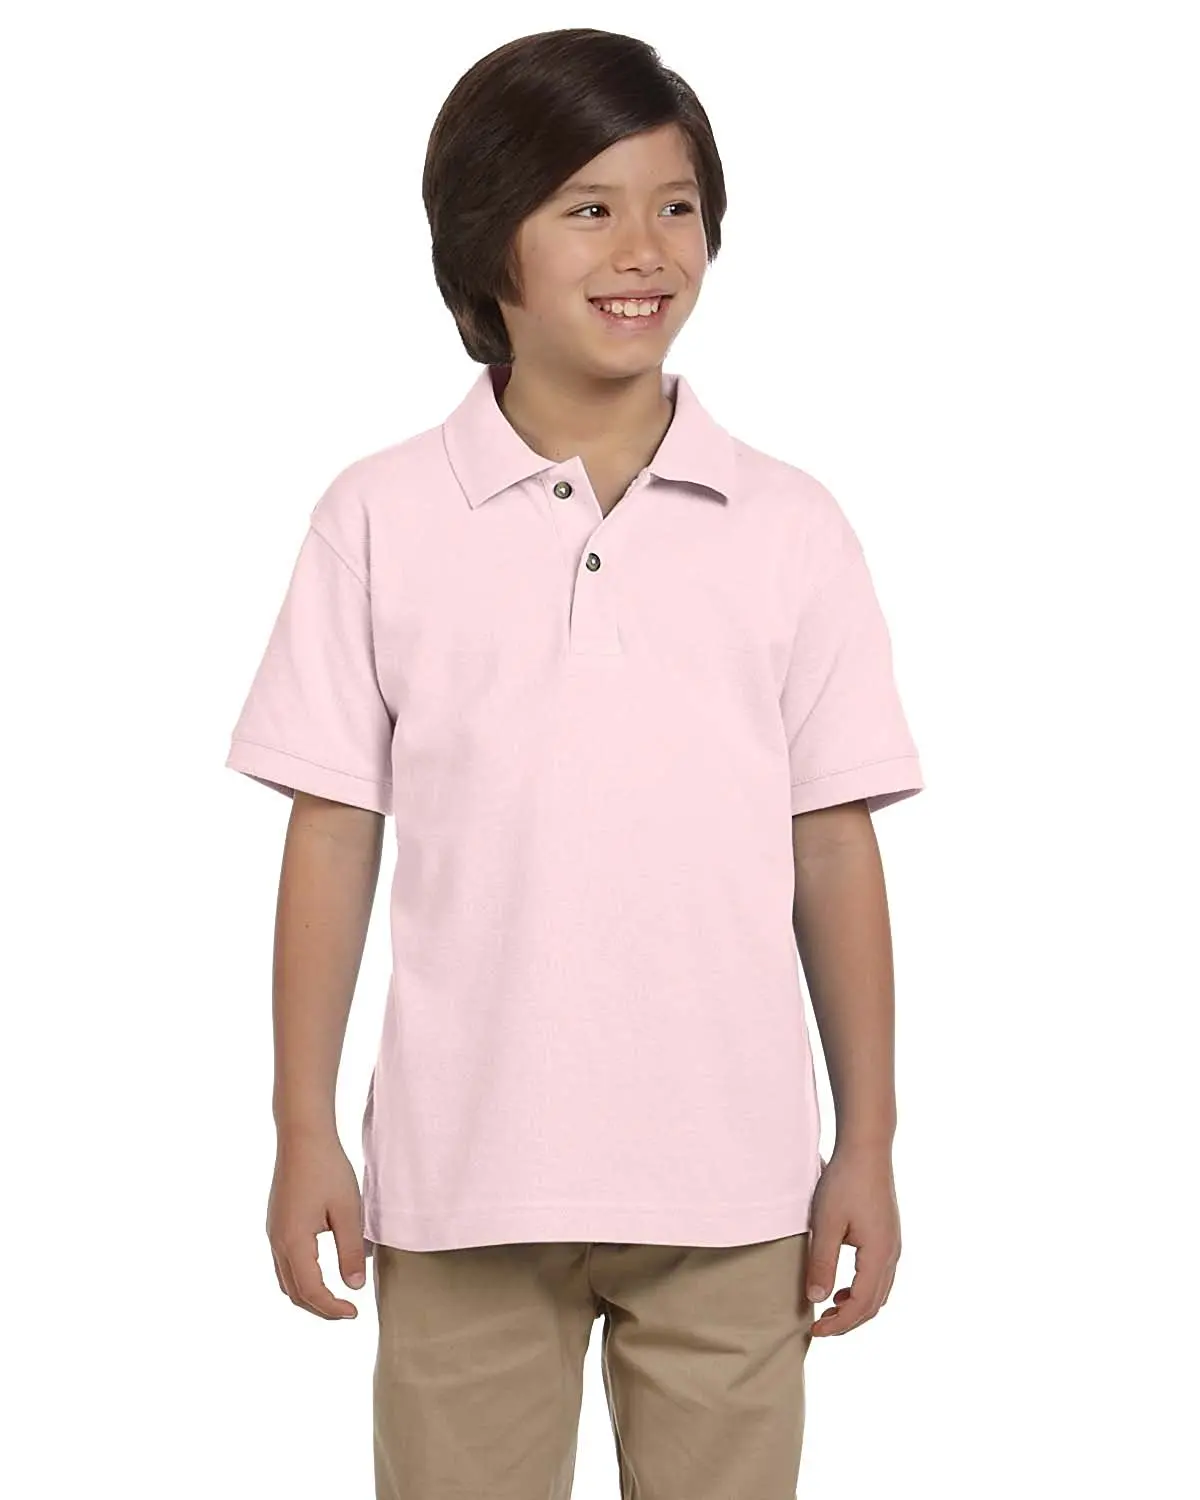 Polo Shirt boy. Школьная форма с рубашкой поло. Navy short Sleeve Polo Shirt Kids. Рубашка поло для подростка с чем носить. Boys polo